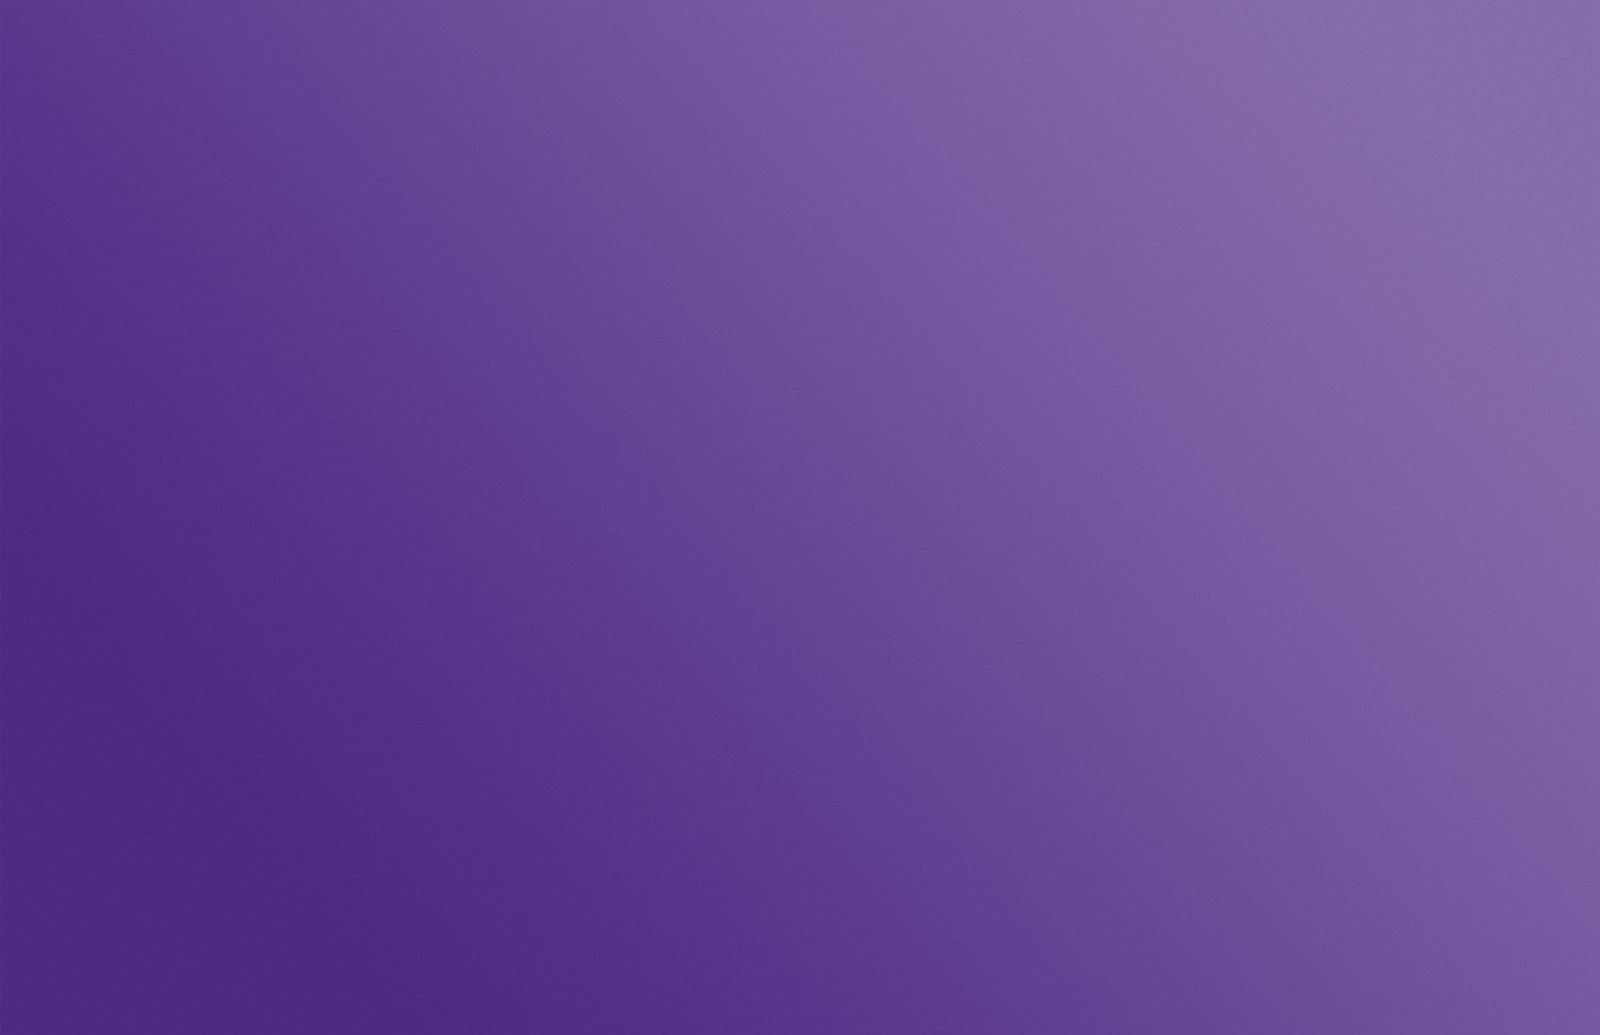 grain & light - hero purple